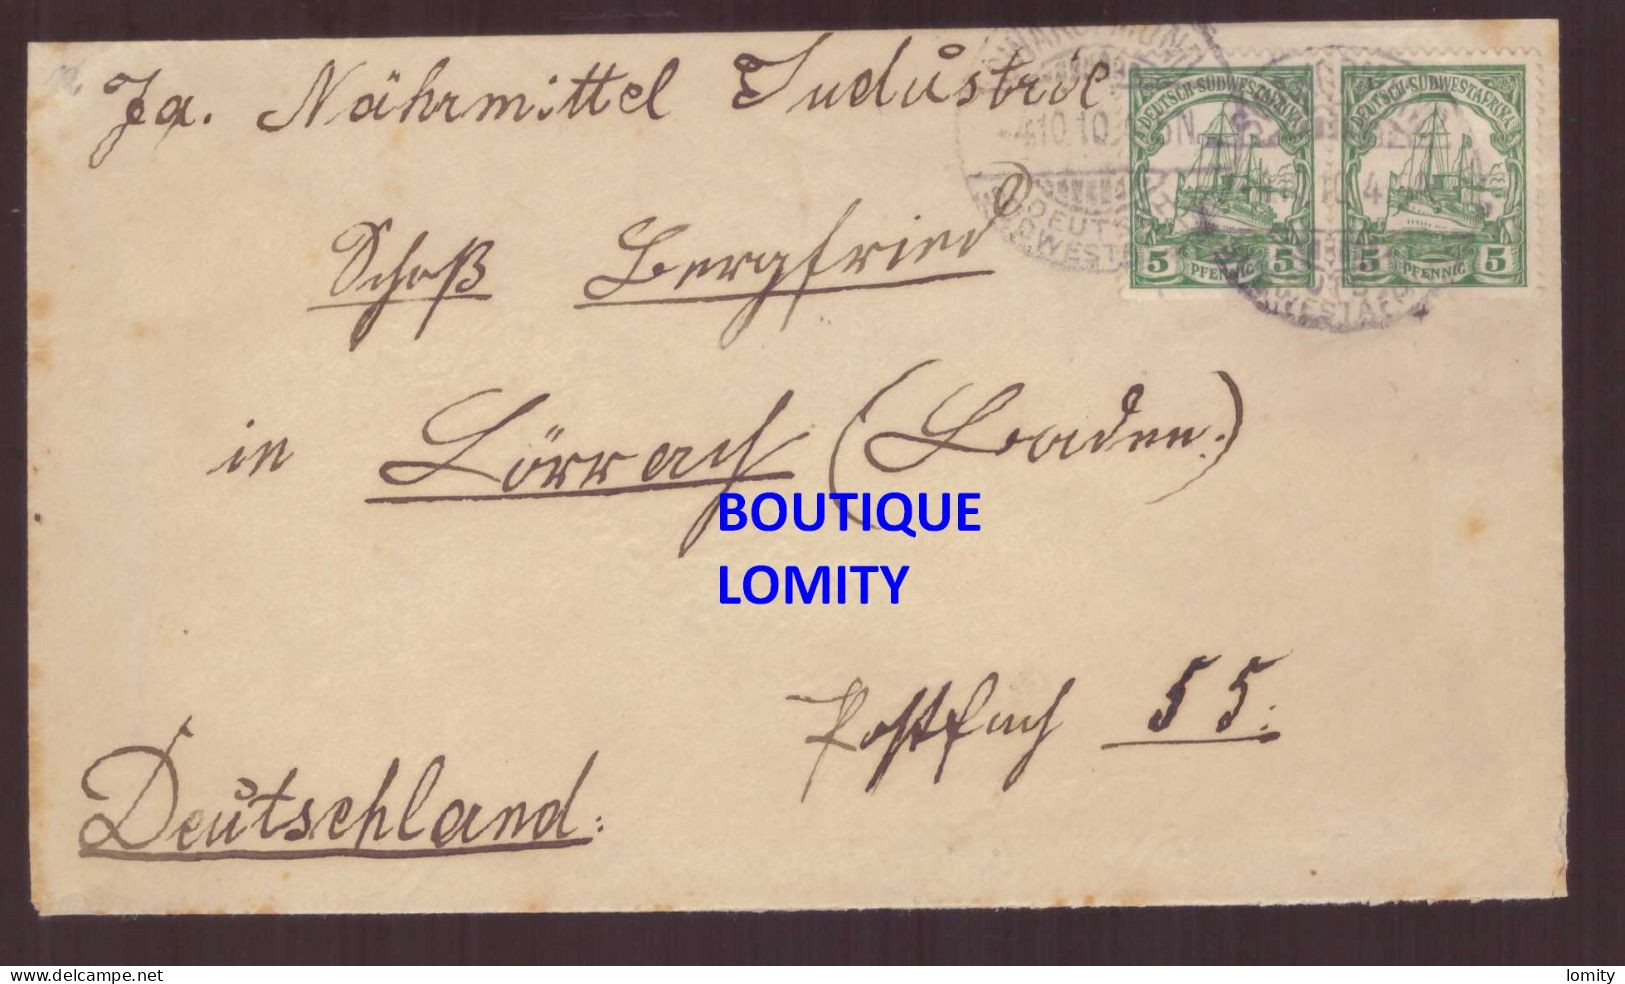 Allemagne Colonie Allemande Lettre Brief Deutsch Sud West Afrika DSWA Cachet 1910 Paire Attachée Timbres Sudwestafrika - Deutsch-Südwestafrika